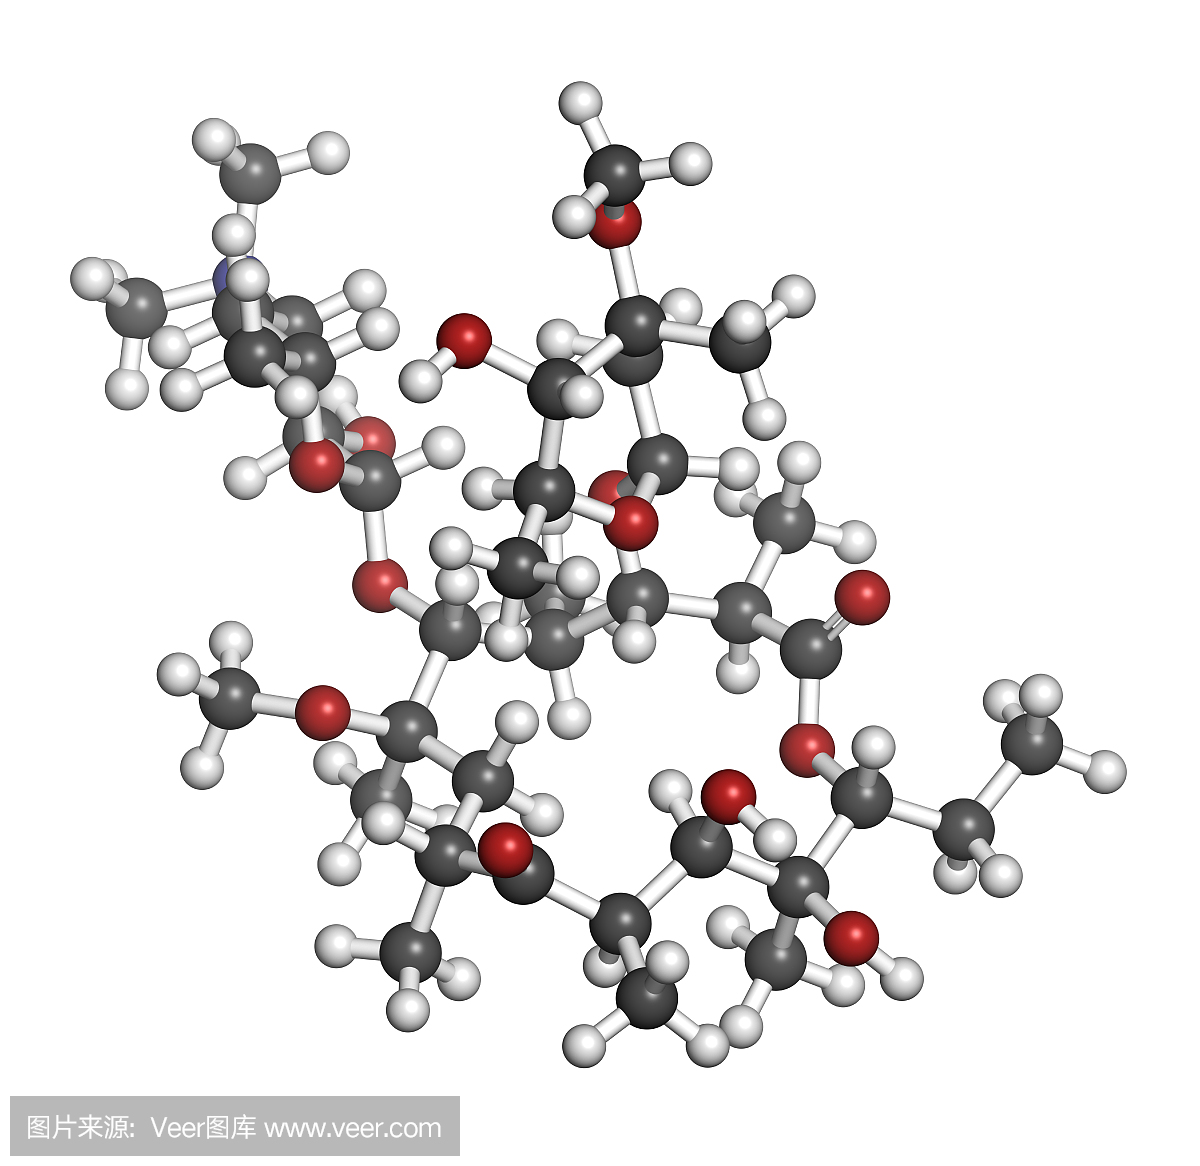 克拉霉素抗生素药物(大环内酯类)分子